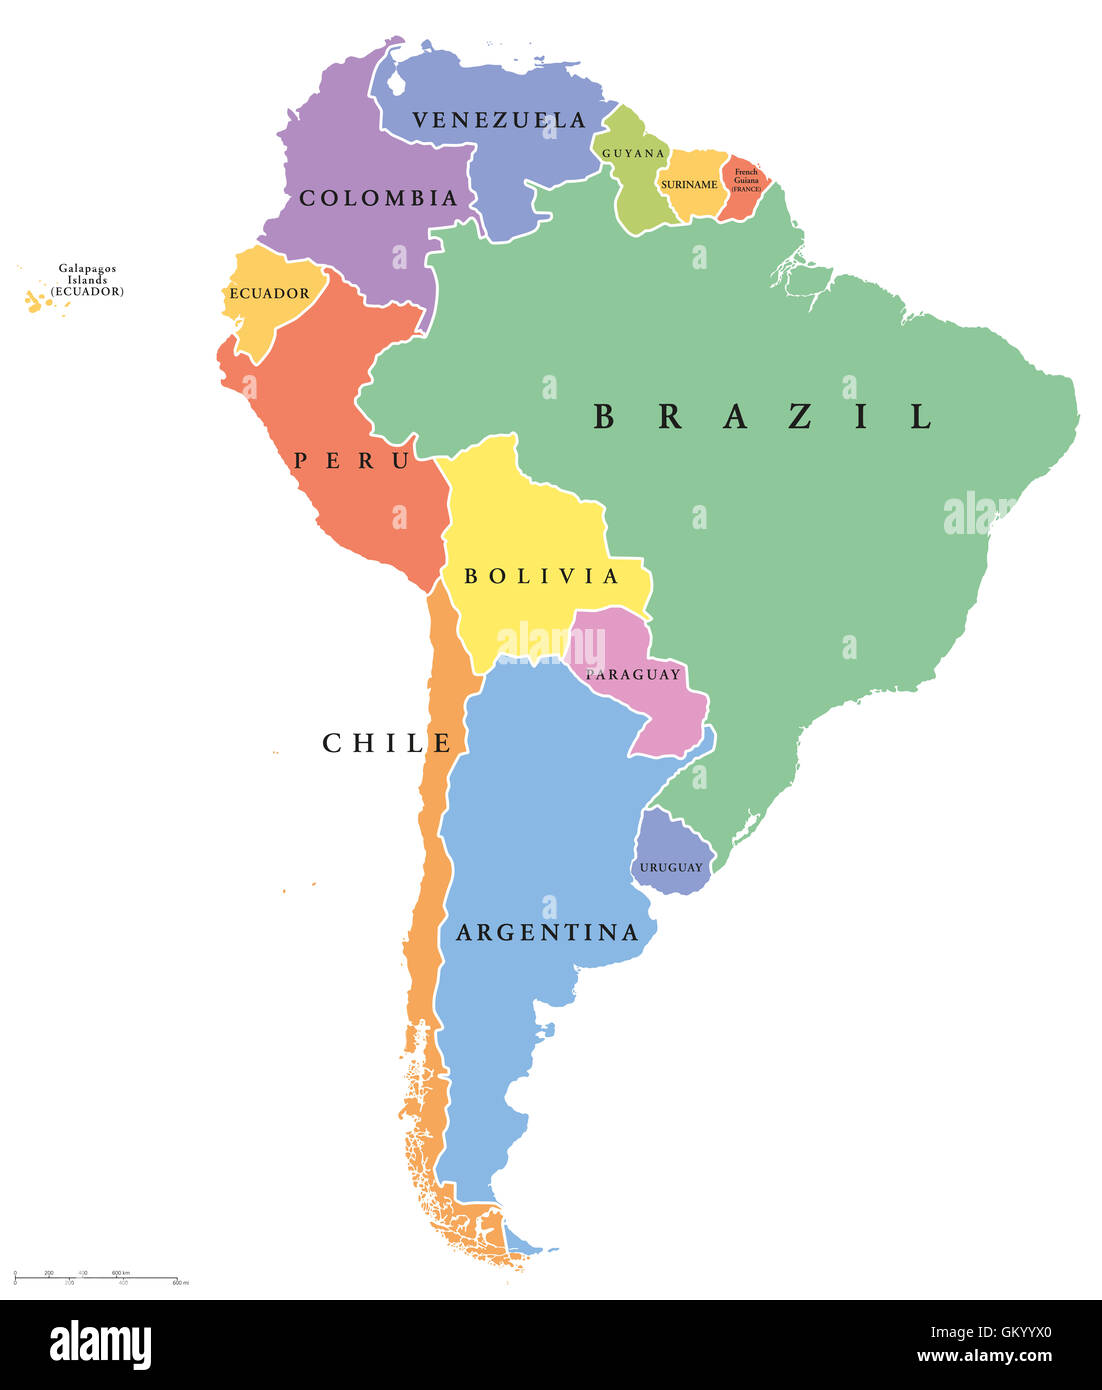 L'Amérique du Sud États-Unis unique carte politique. Tous les pays en différentes couleurs, avec des frontières nationales et des noms de pays. Banque D'Images